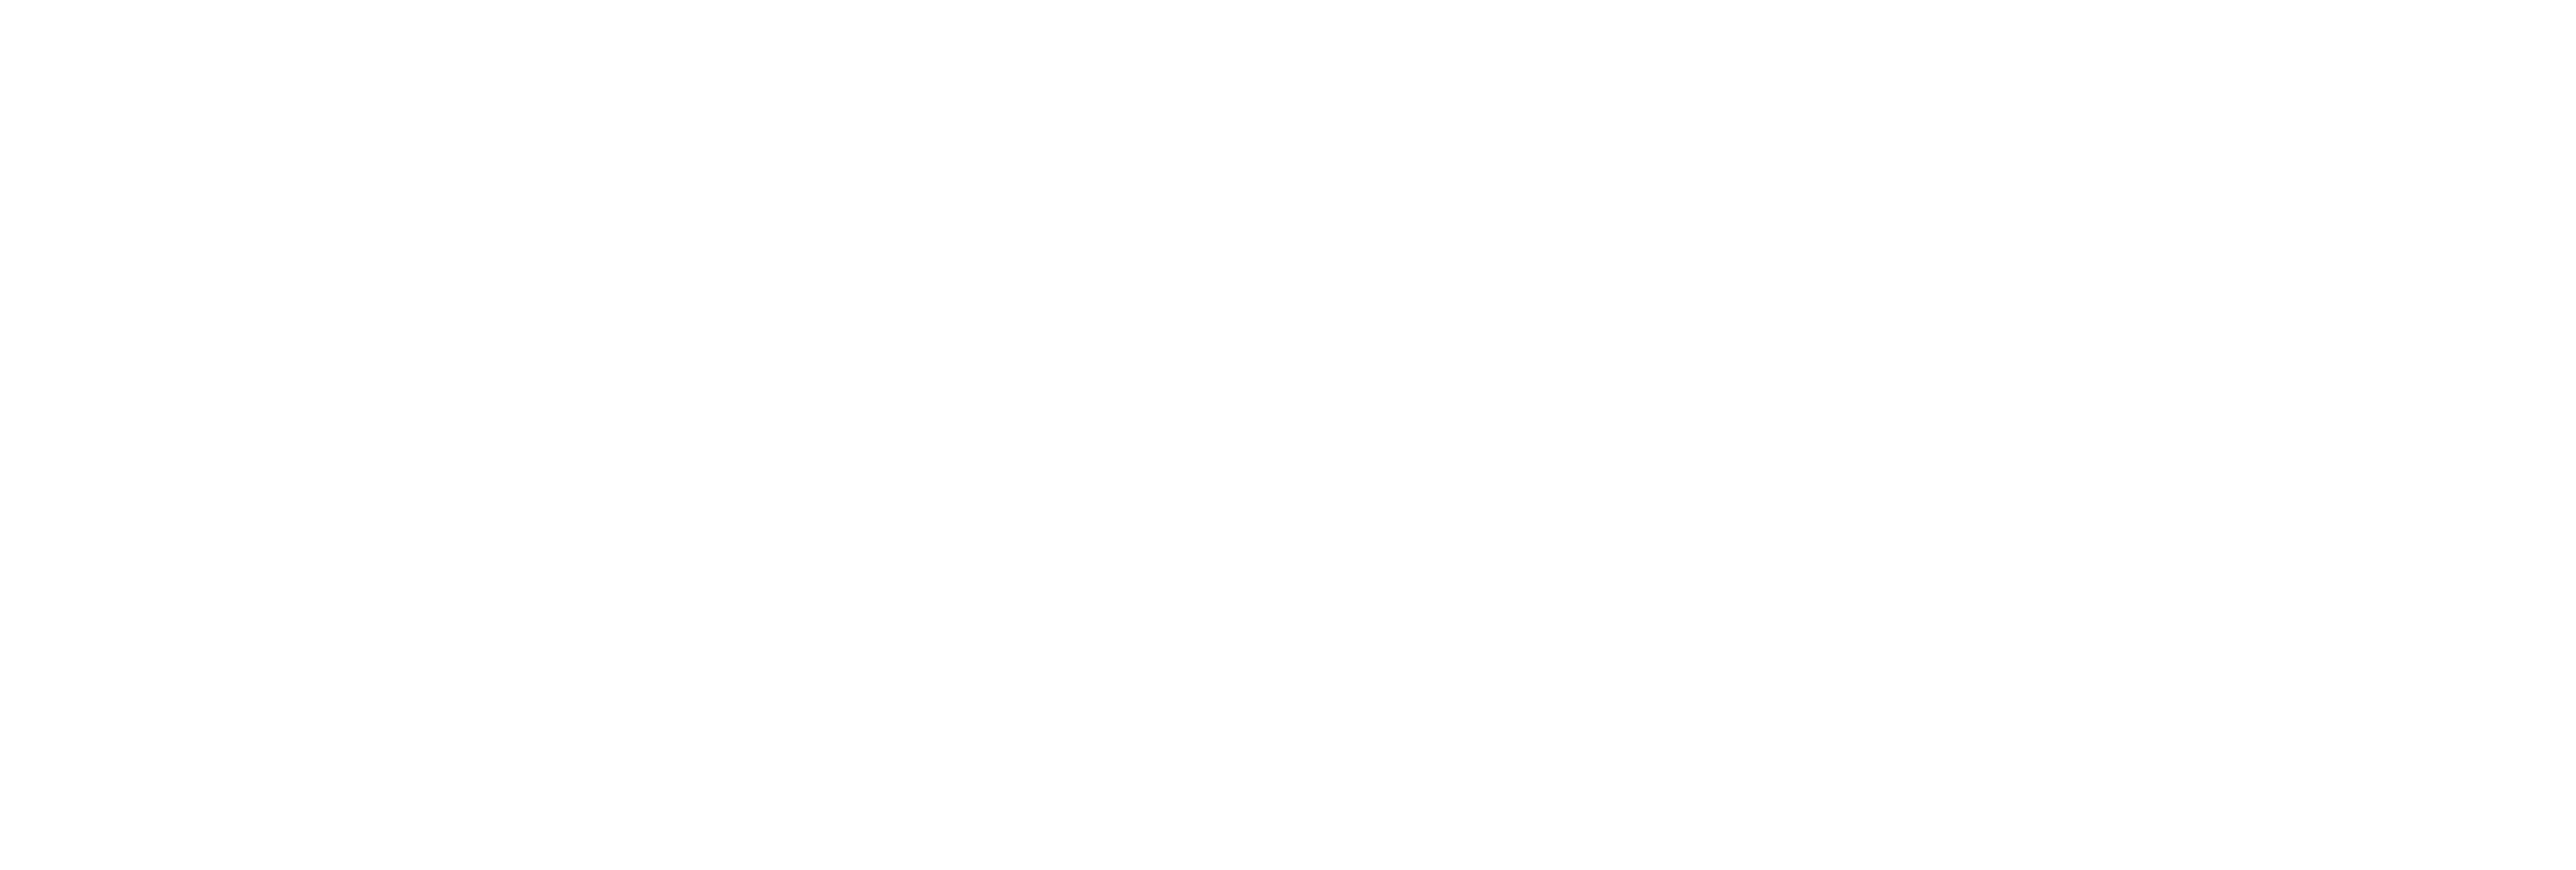 AniCura Dierenkliniek Rotterdam - Capelle logo